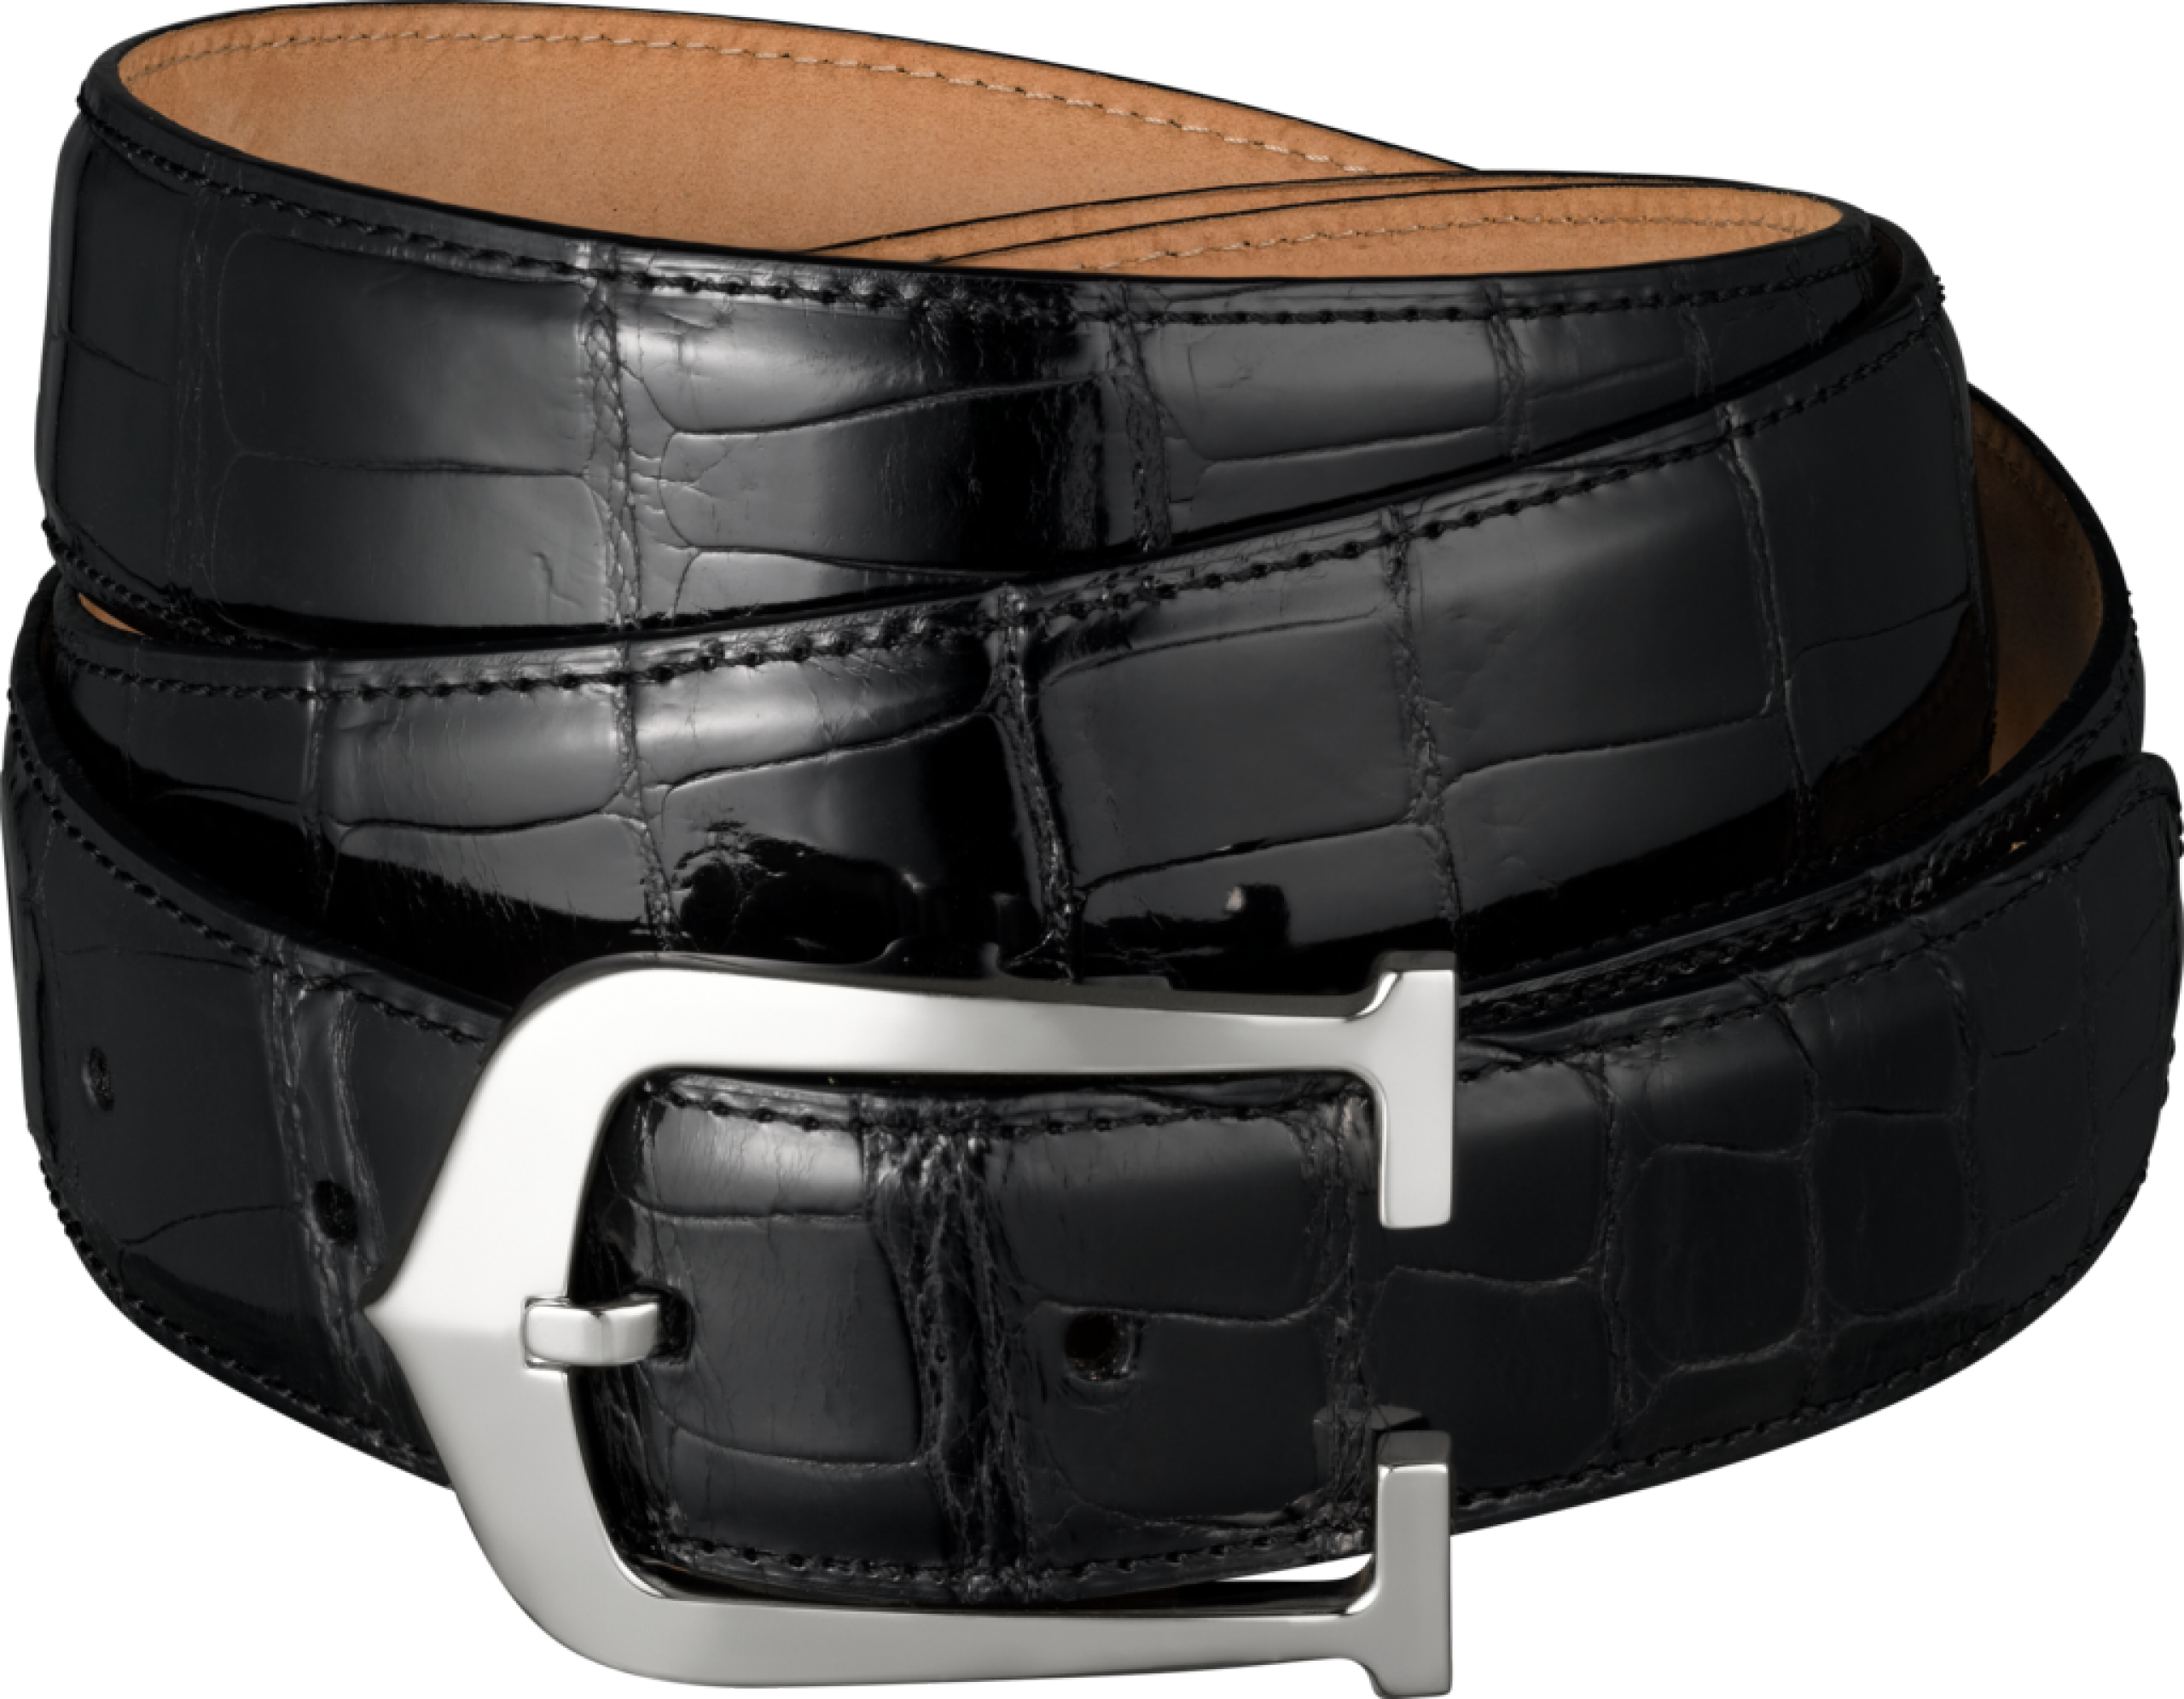 Black Leather Belt Png Image - Belt, Transparent background PNG HD thumbnail